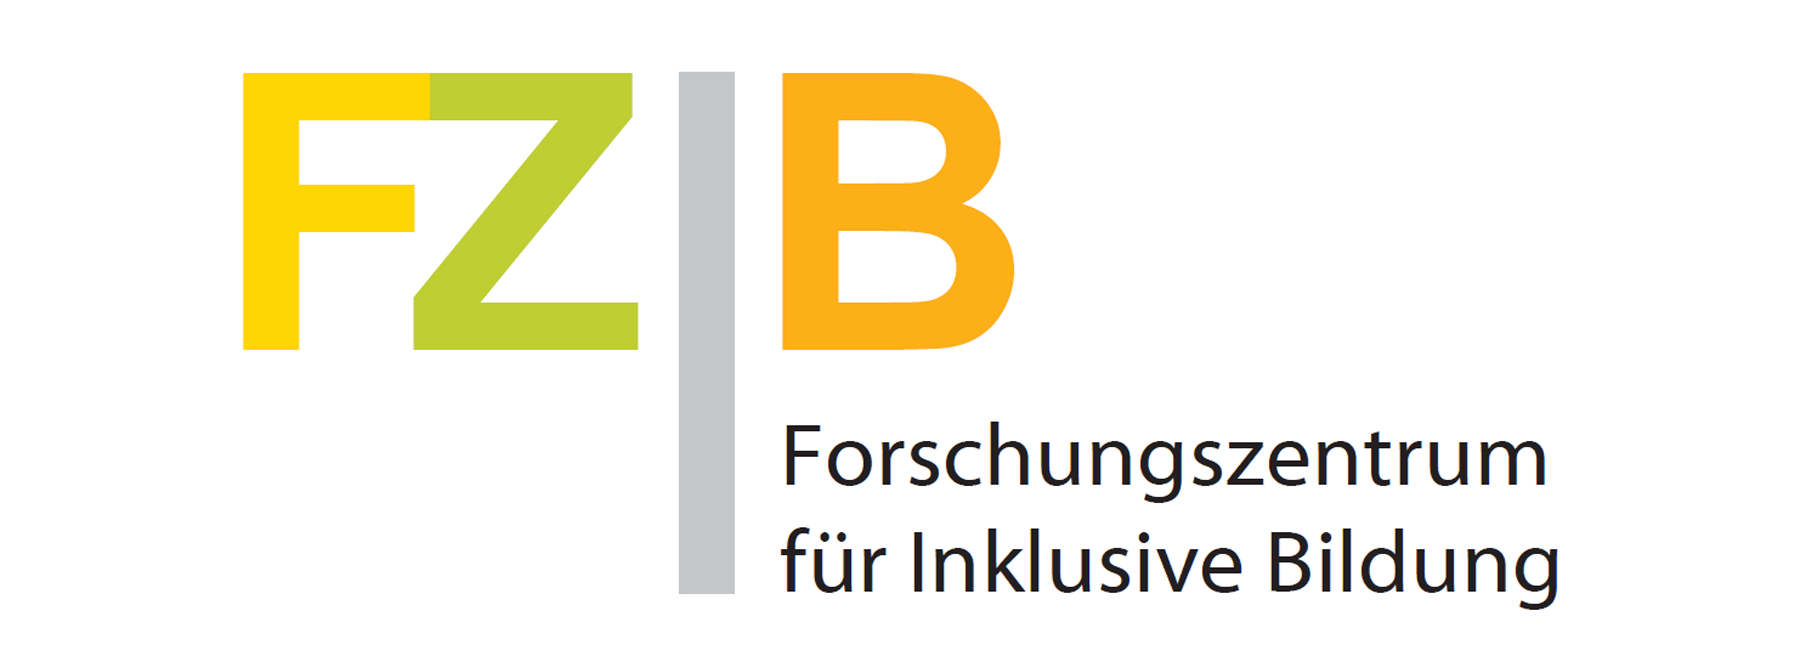 Gründung des Forschungszentrums für Inklusive Bildung (FZIB)